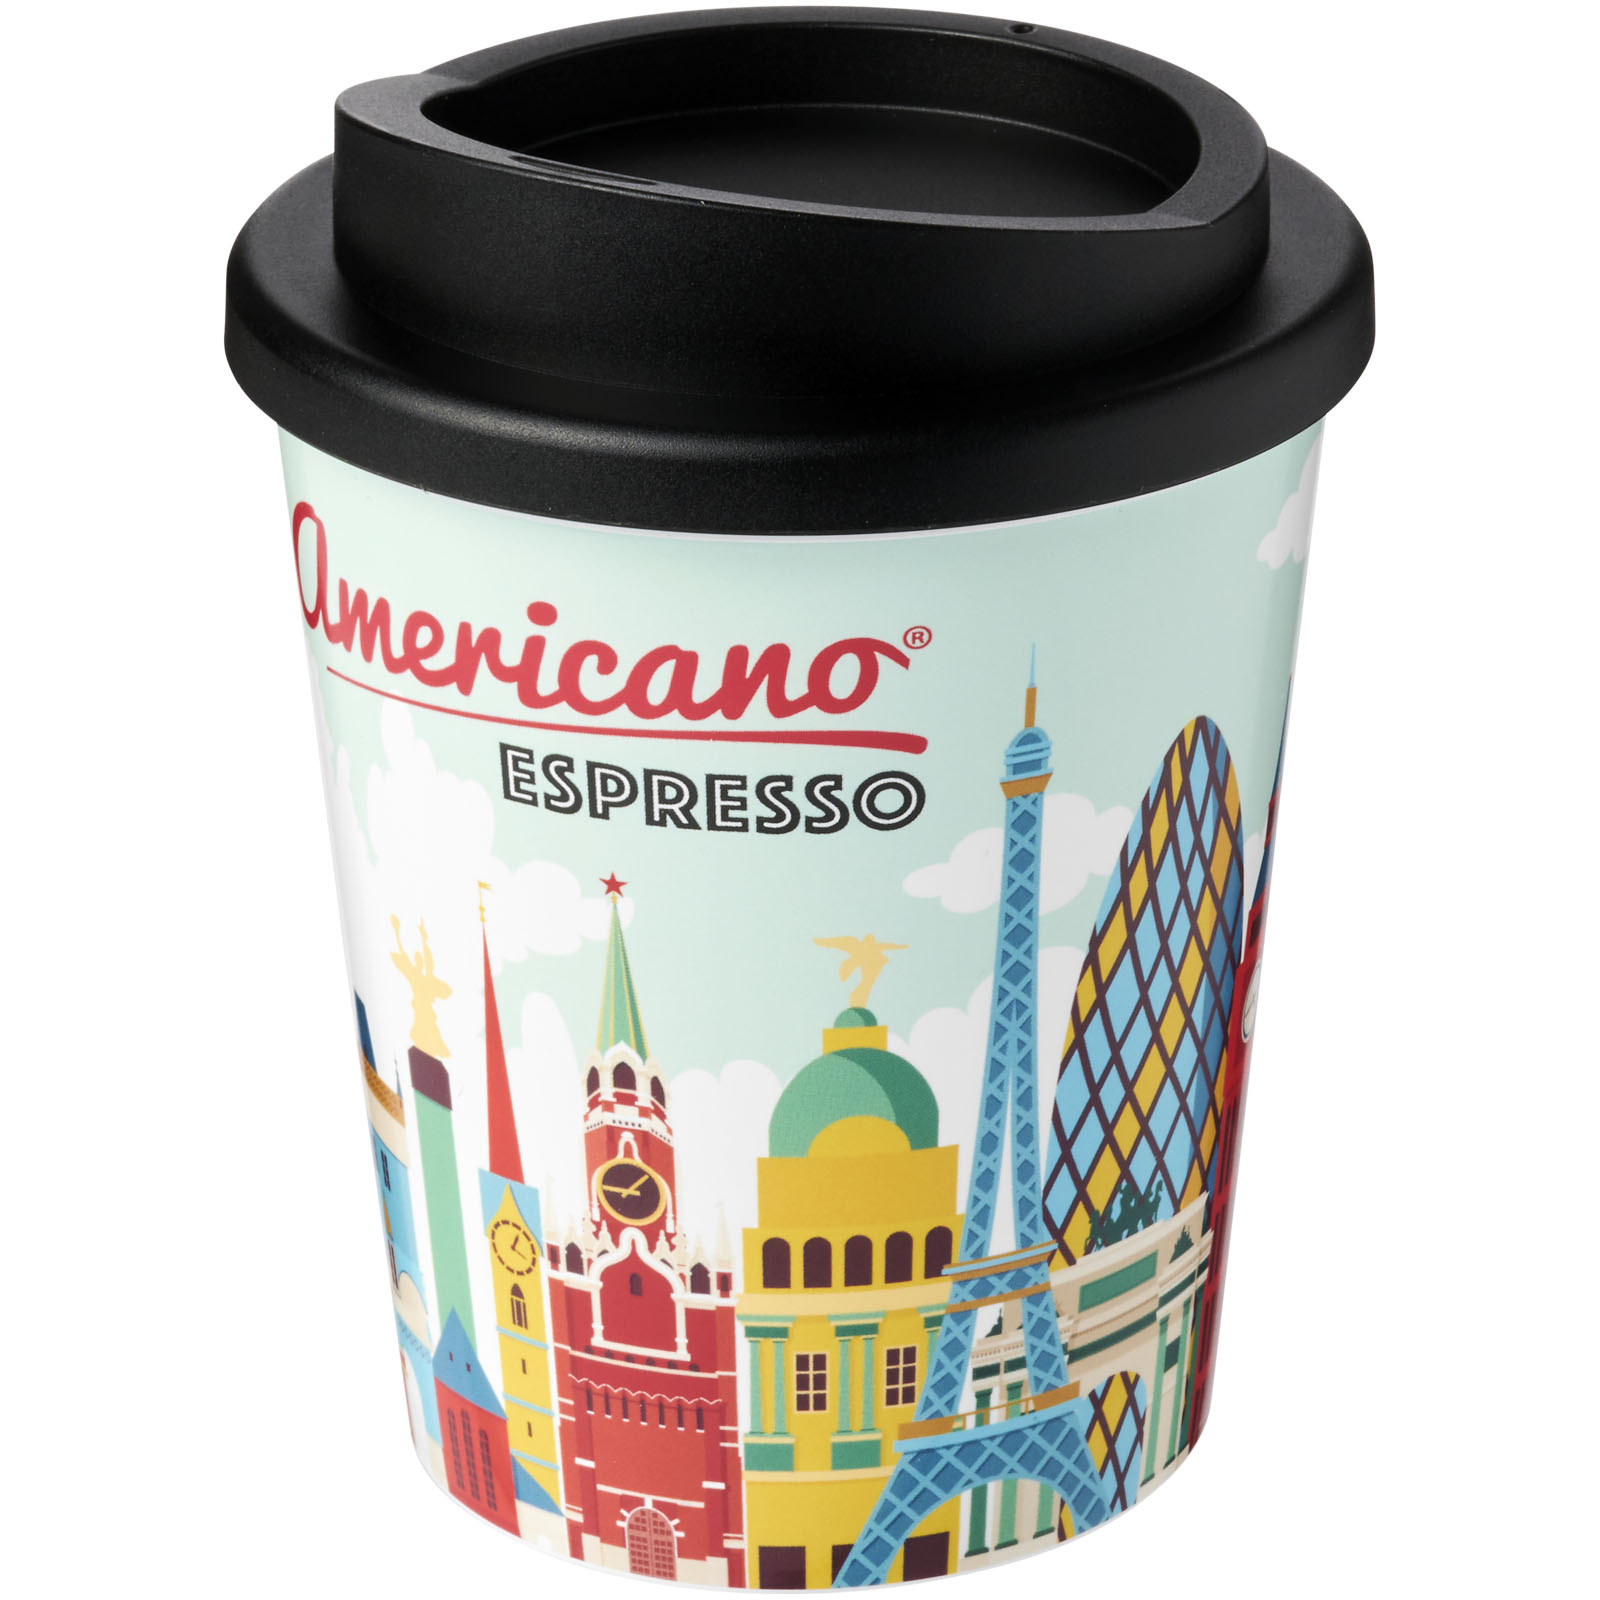 Plastic thermo mug Brite Americano Espresso, 250 ml